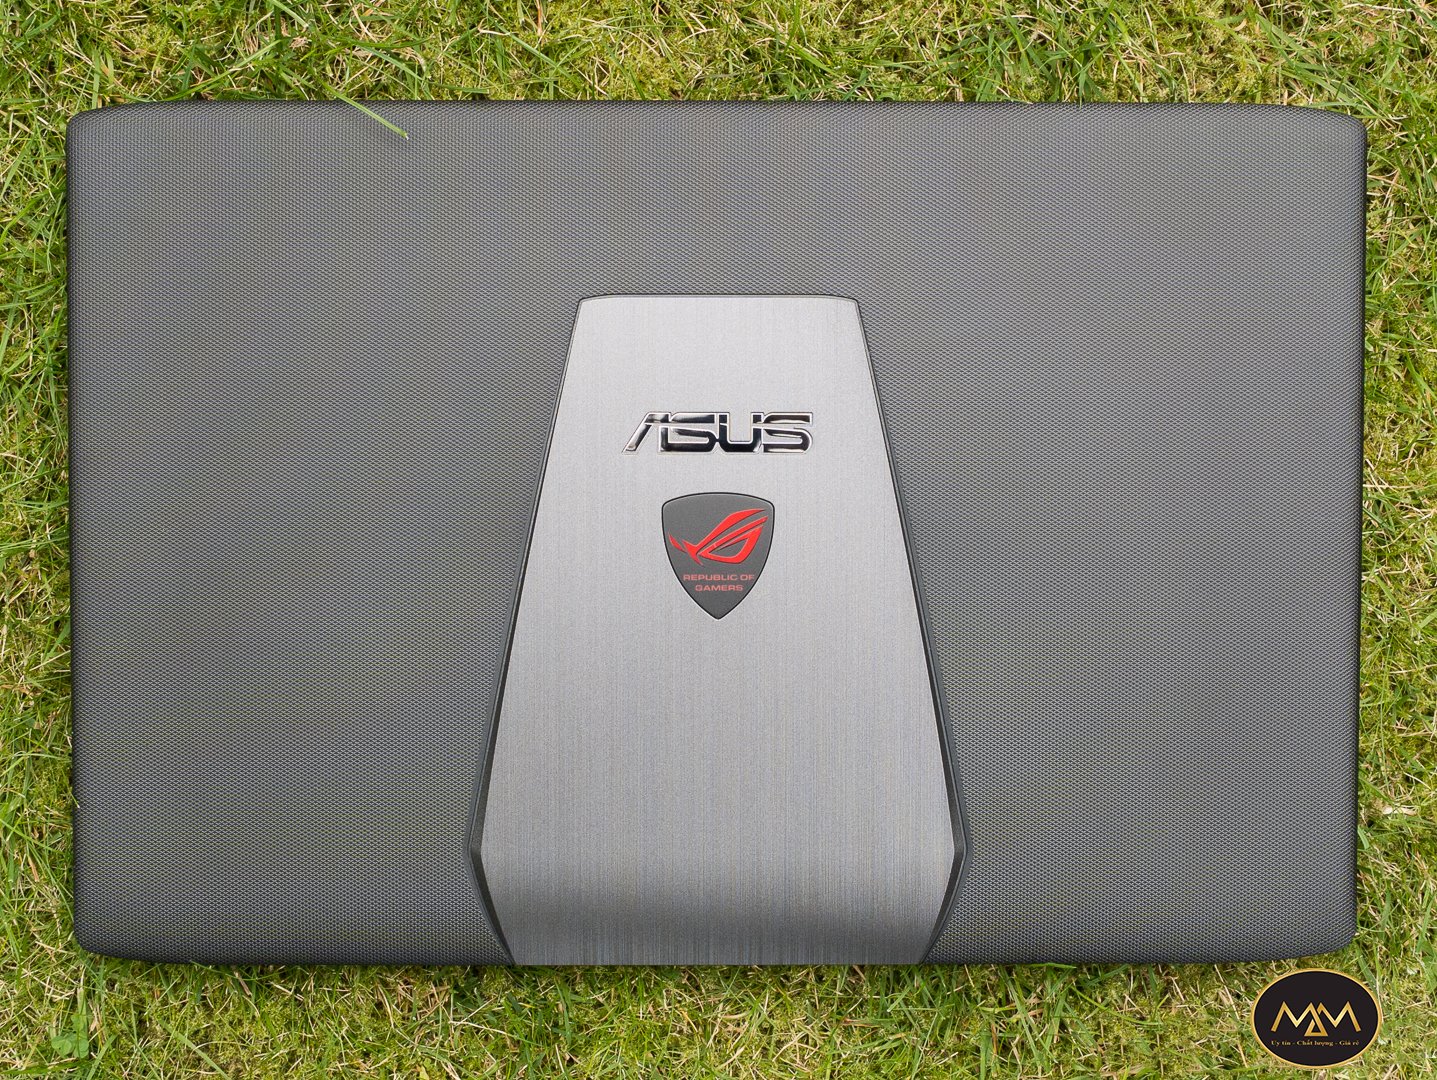 Asus Gaming GL552/ i5 6300HQ/ Ram 8G/ SSD128 + 500G/ GTX 950M 4G/ 15.6inch/ LED ĐỎ/ Chuyên Game/ Giá rẻ